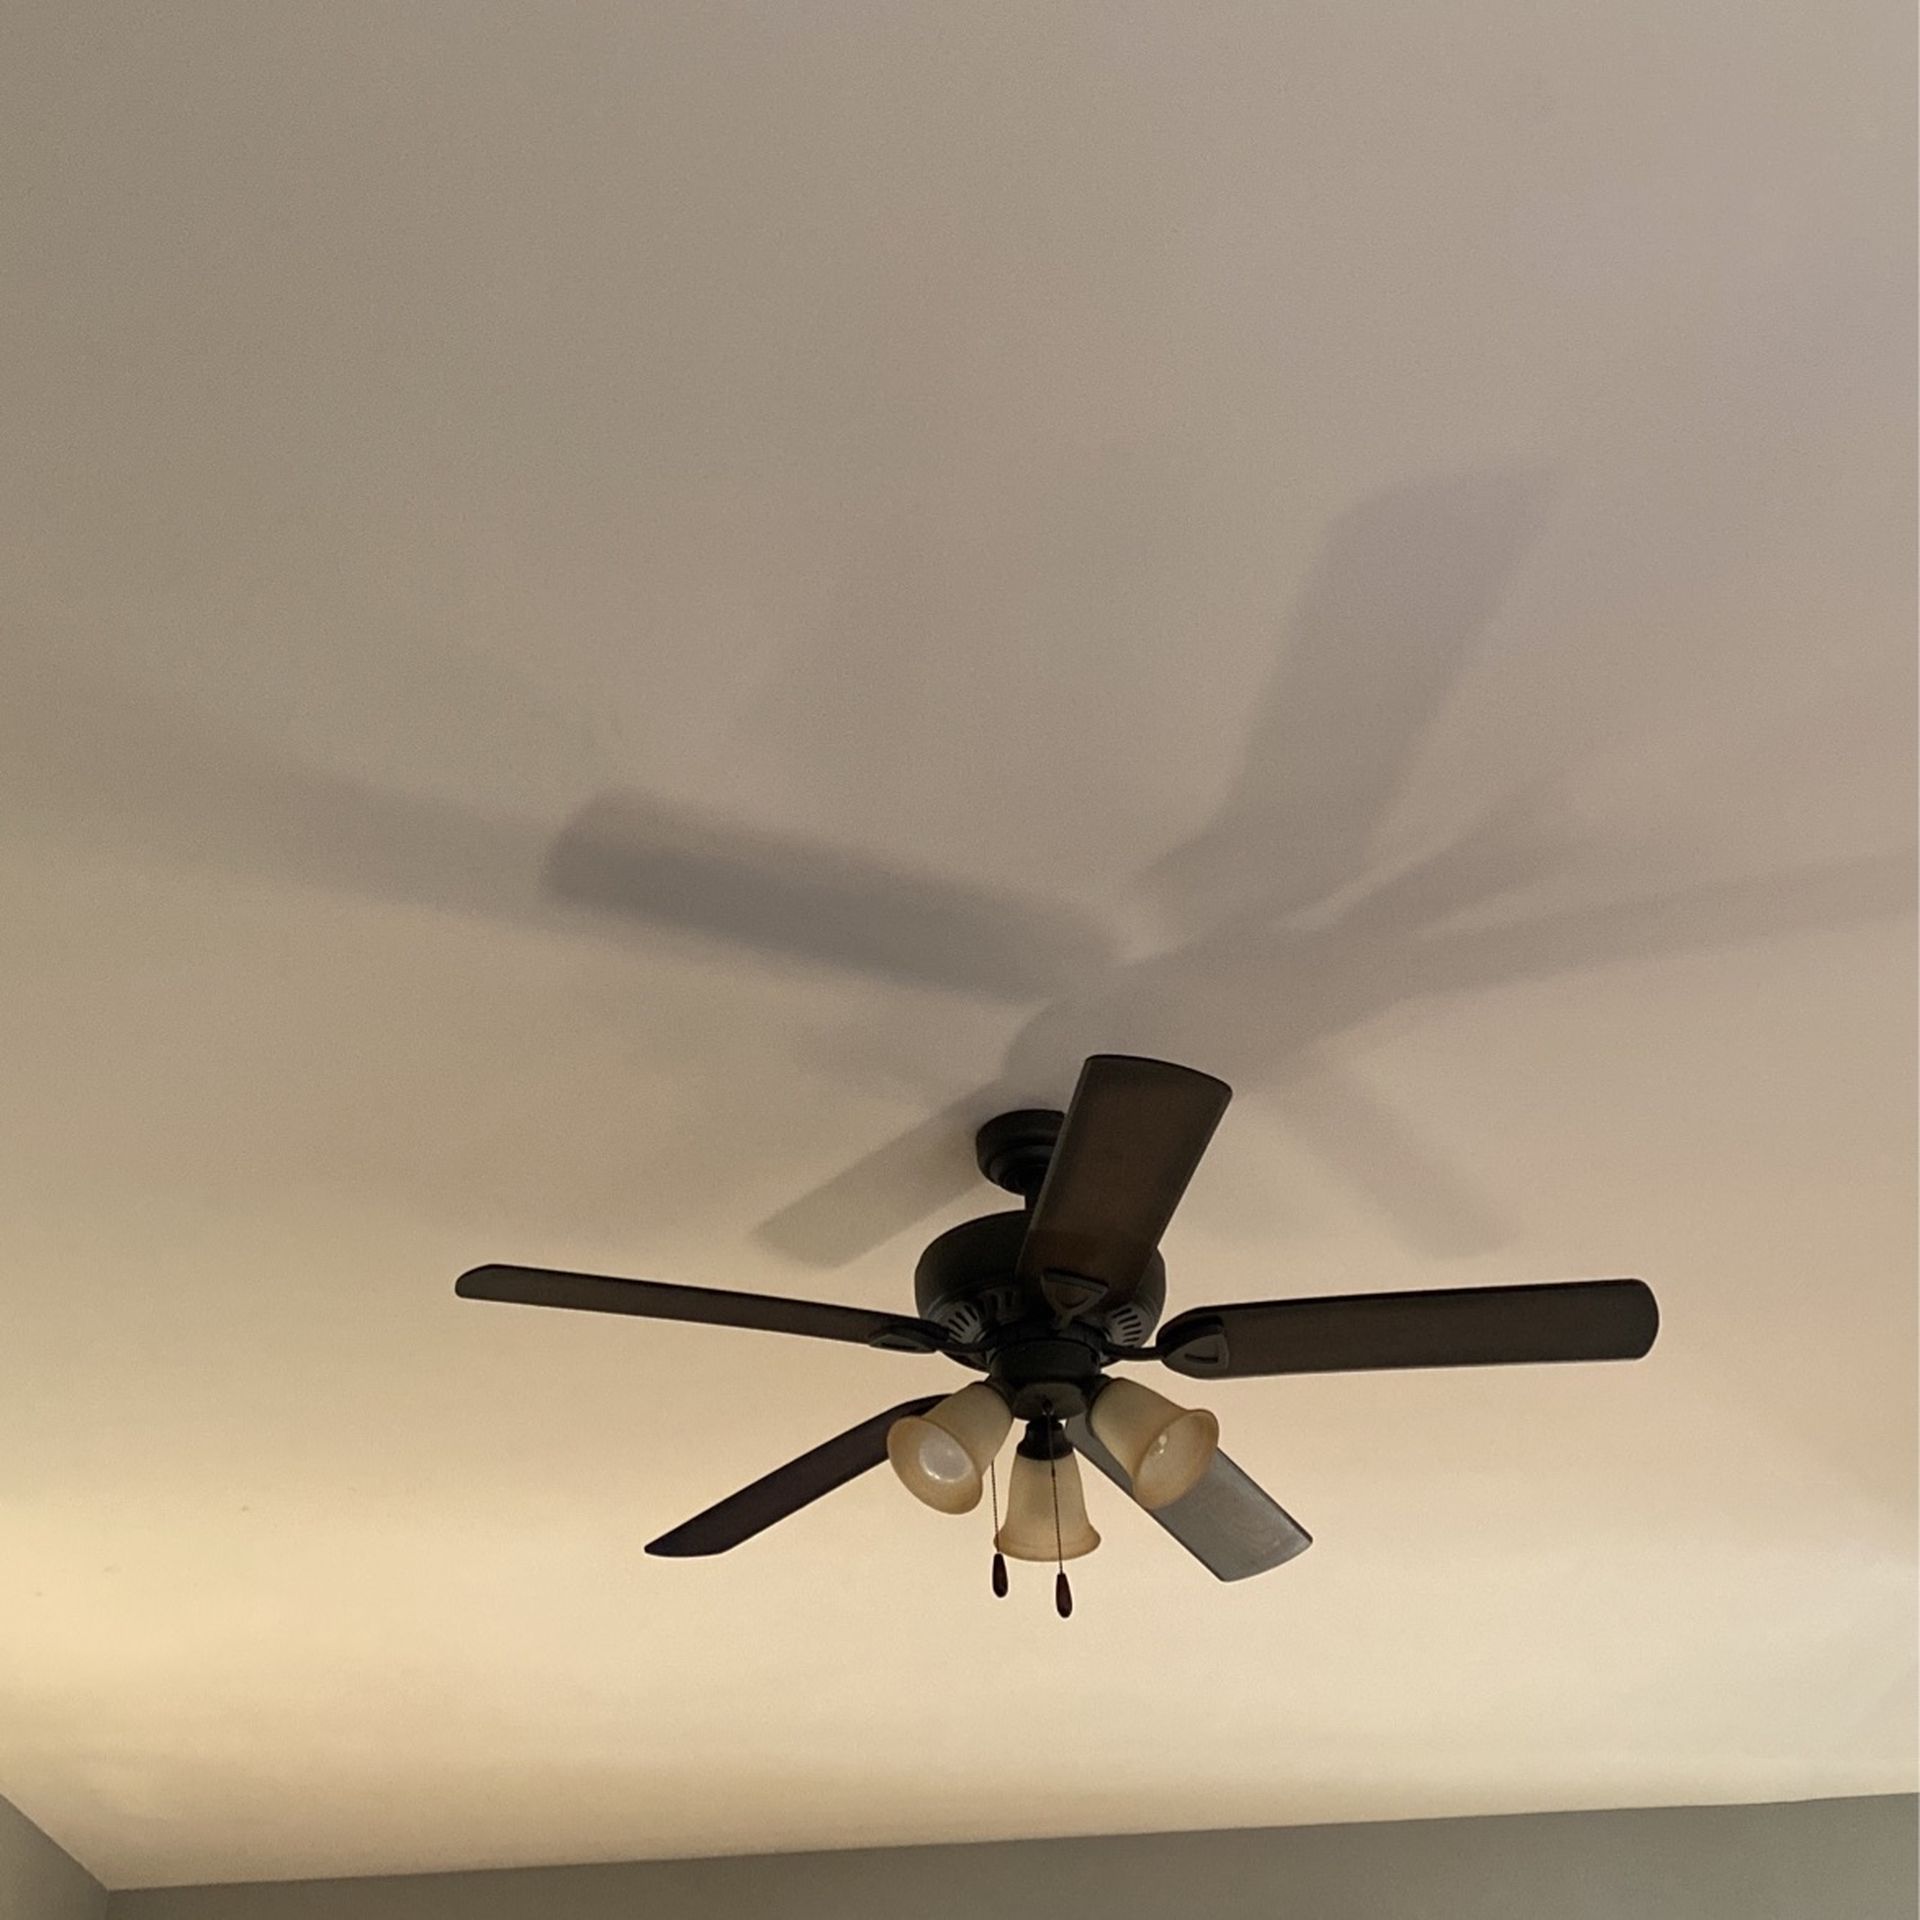 52 inch ceiling fan $300